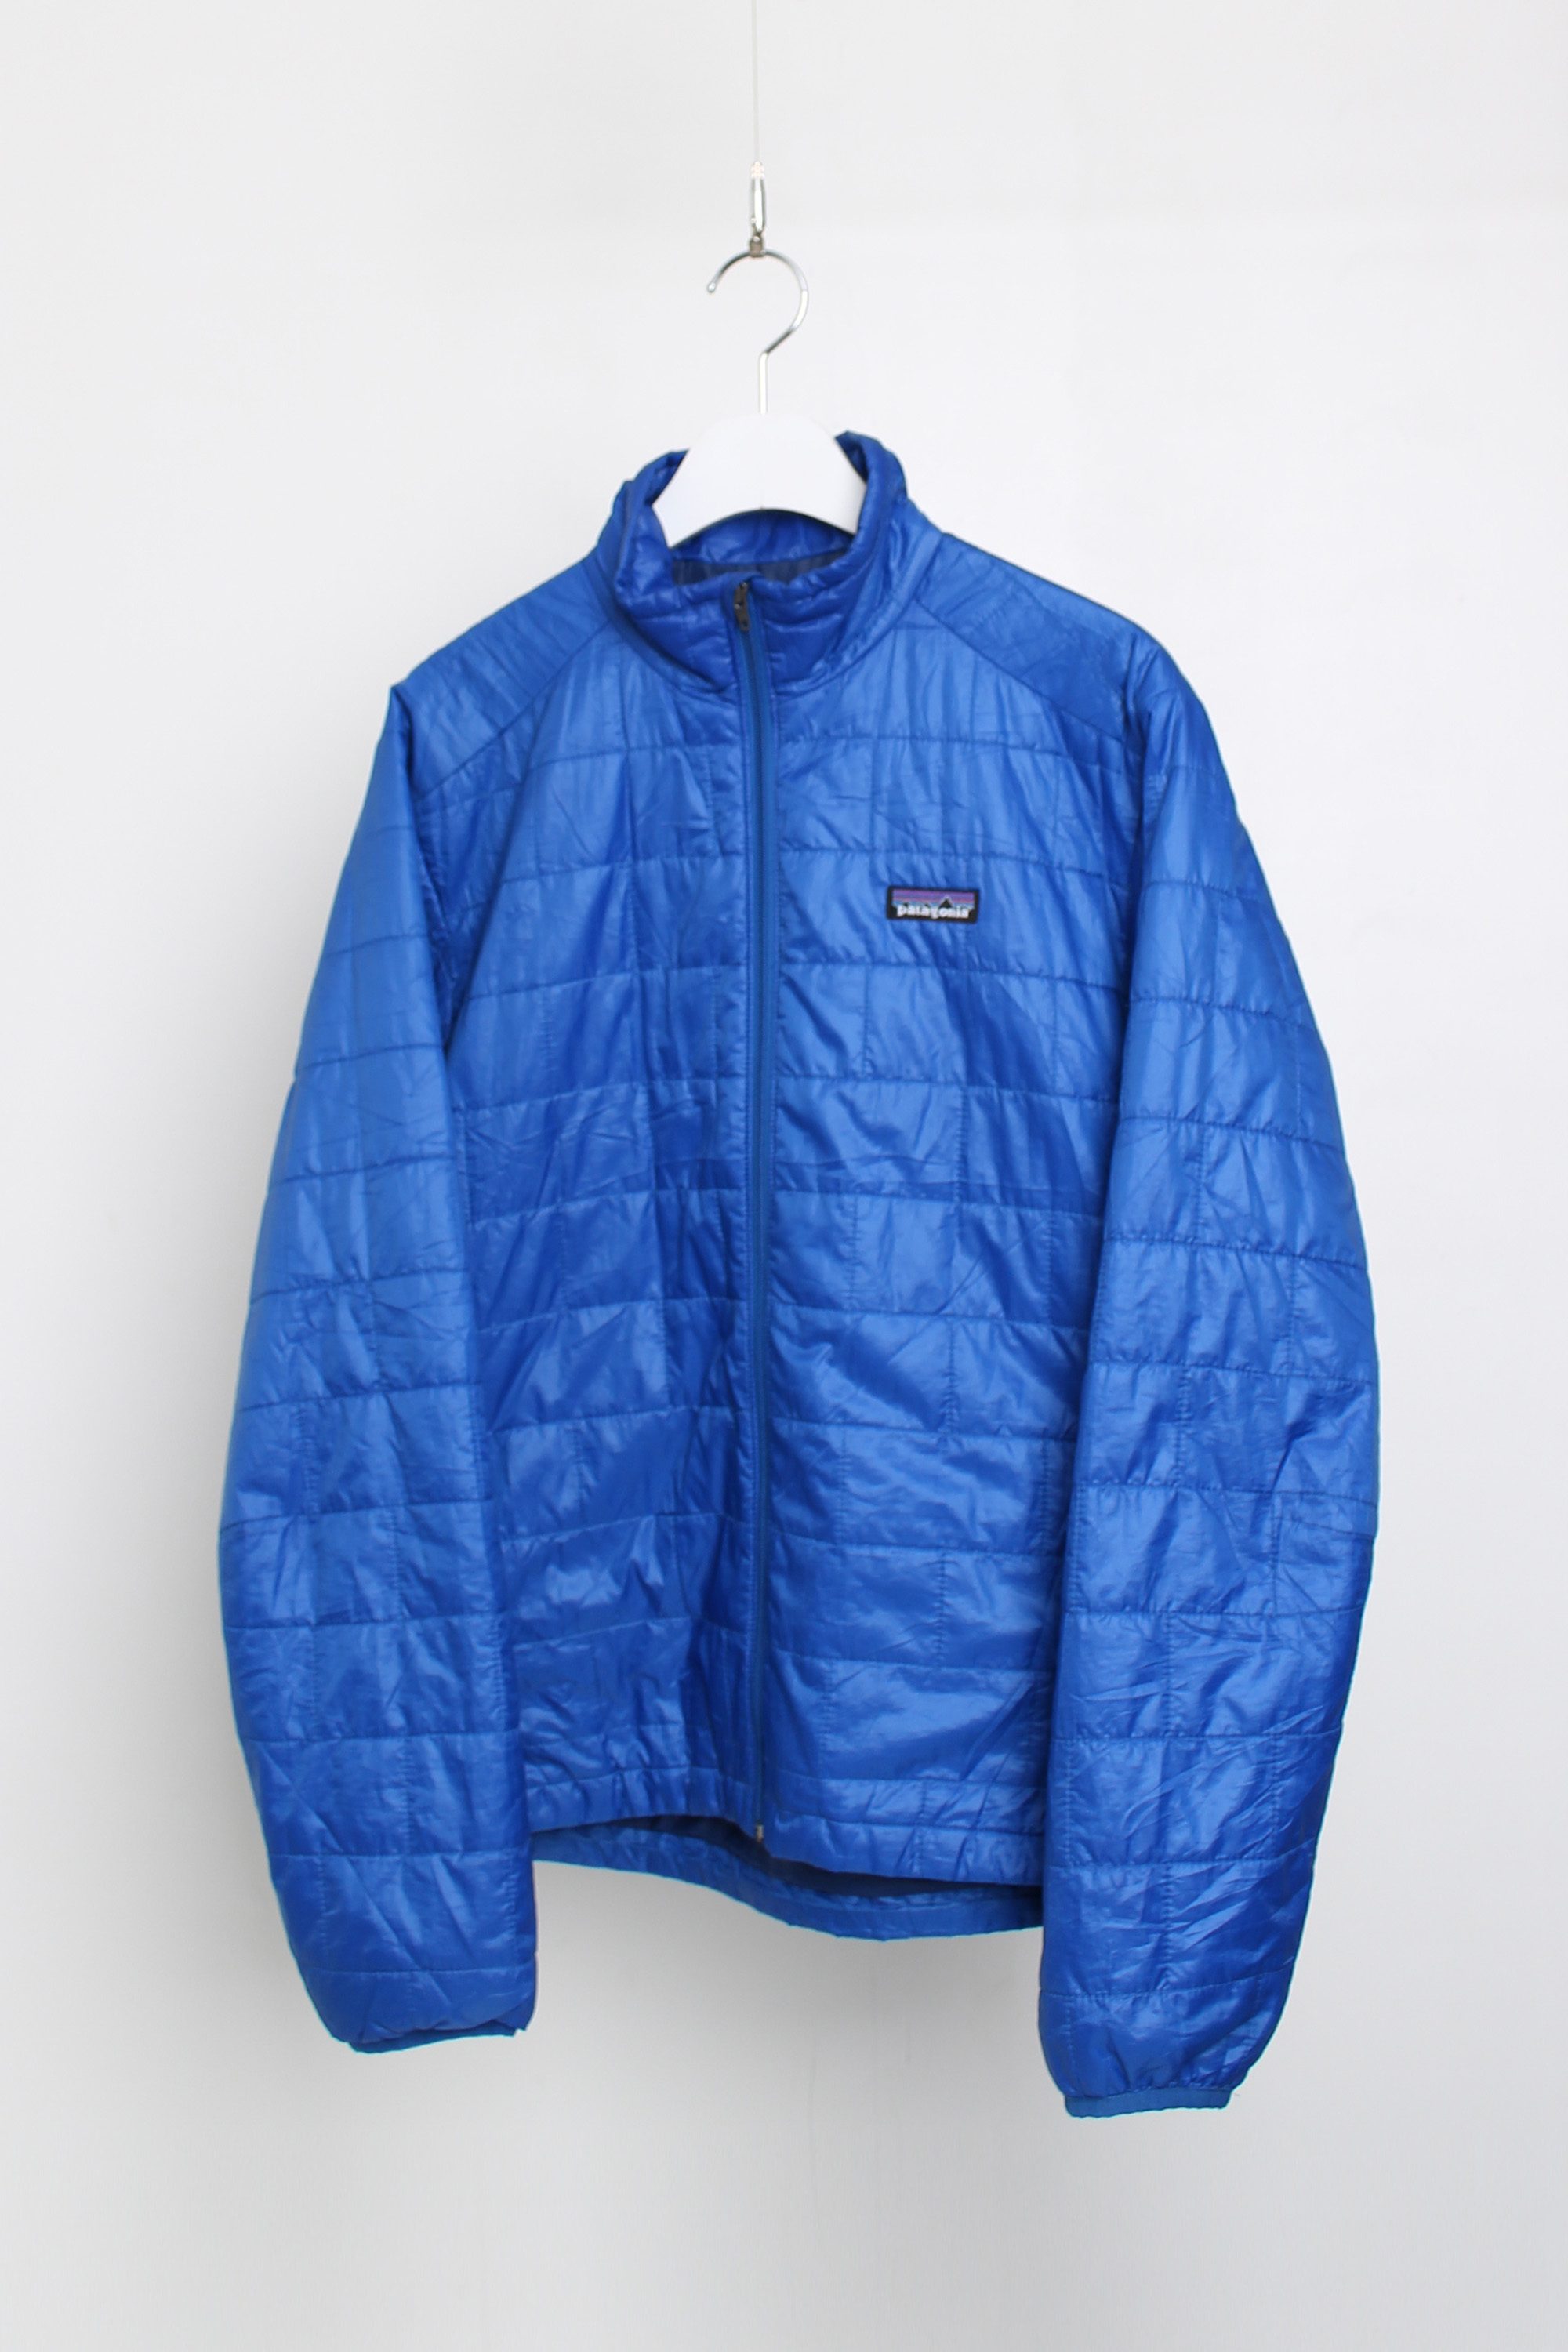 patagonia primaloft jacket